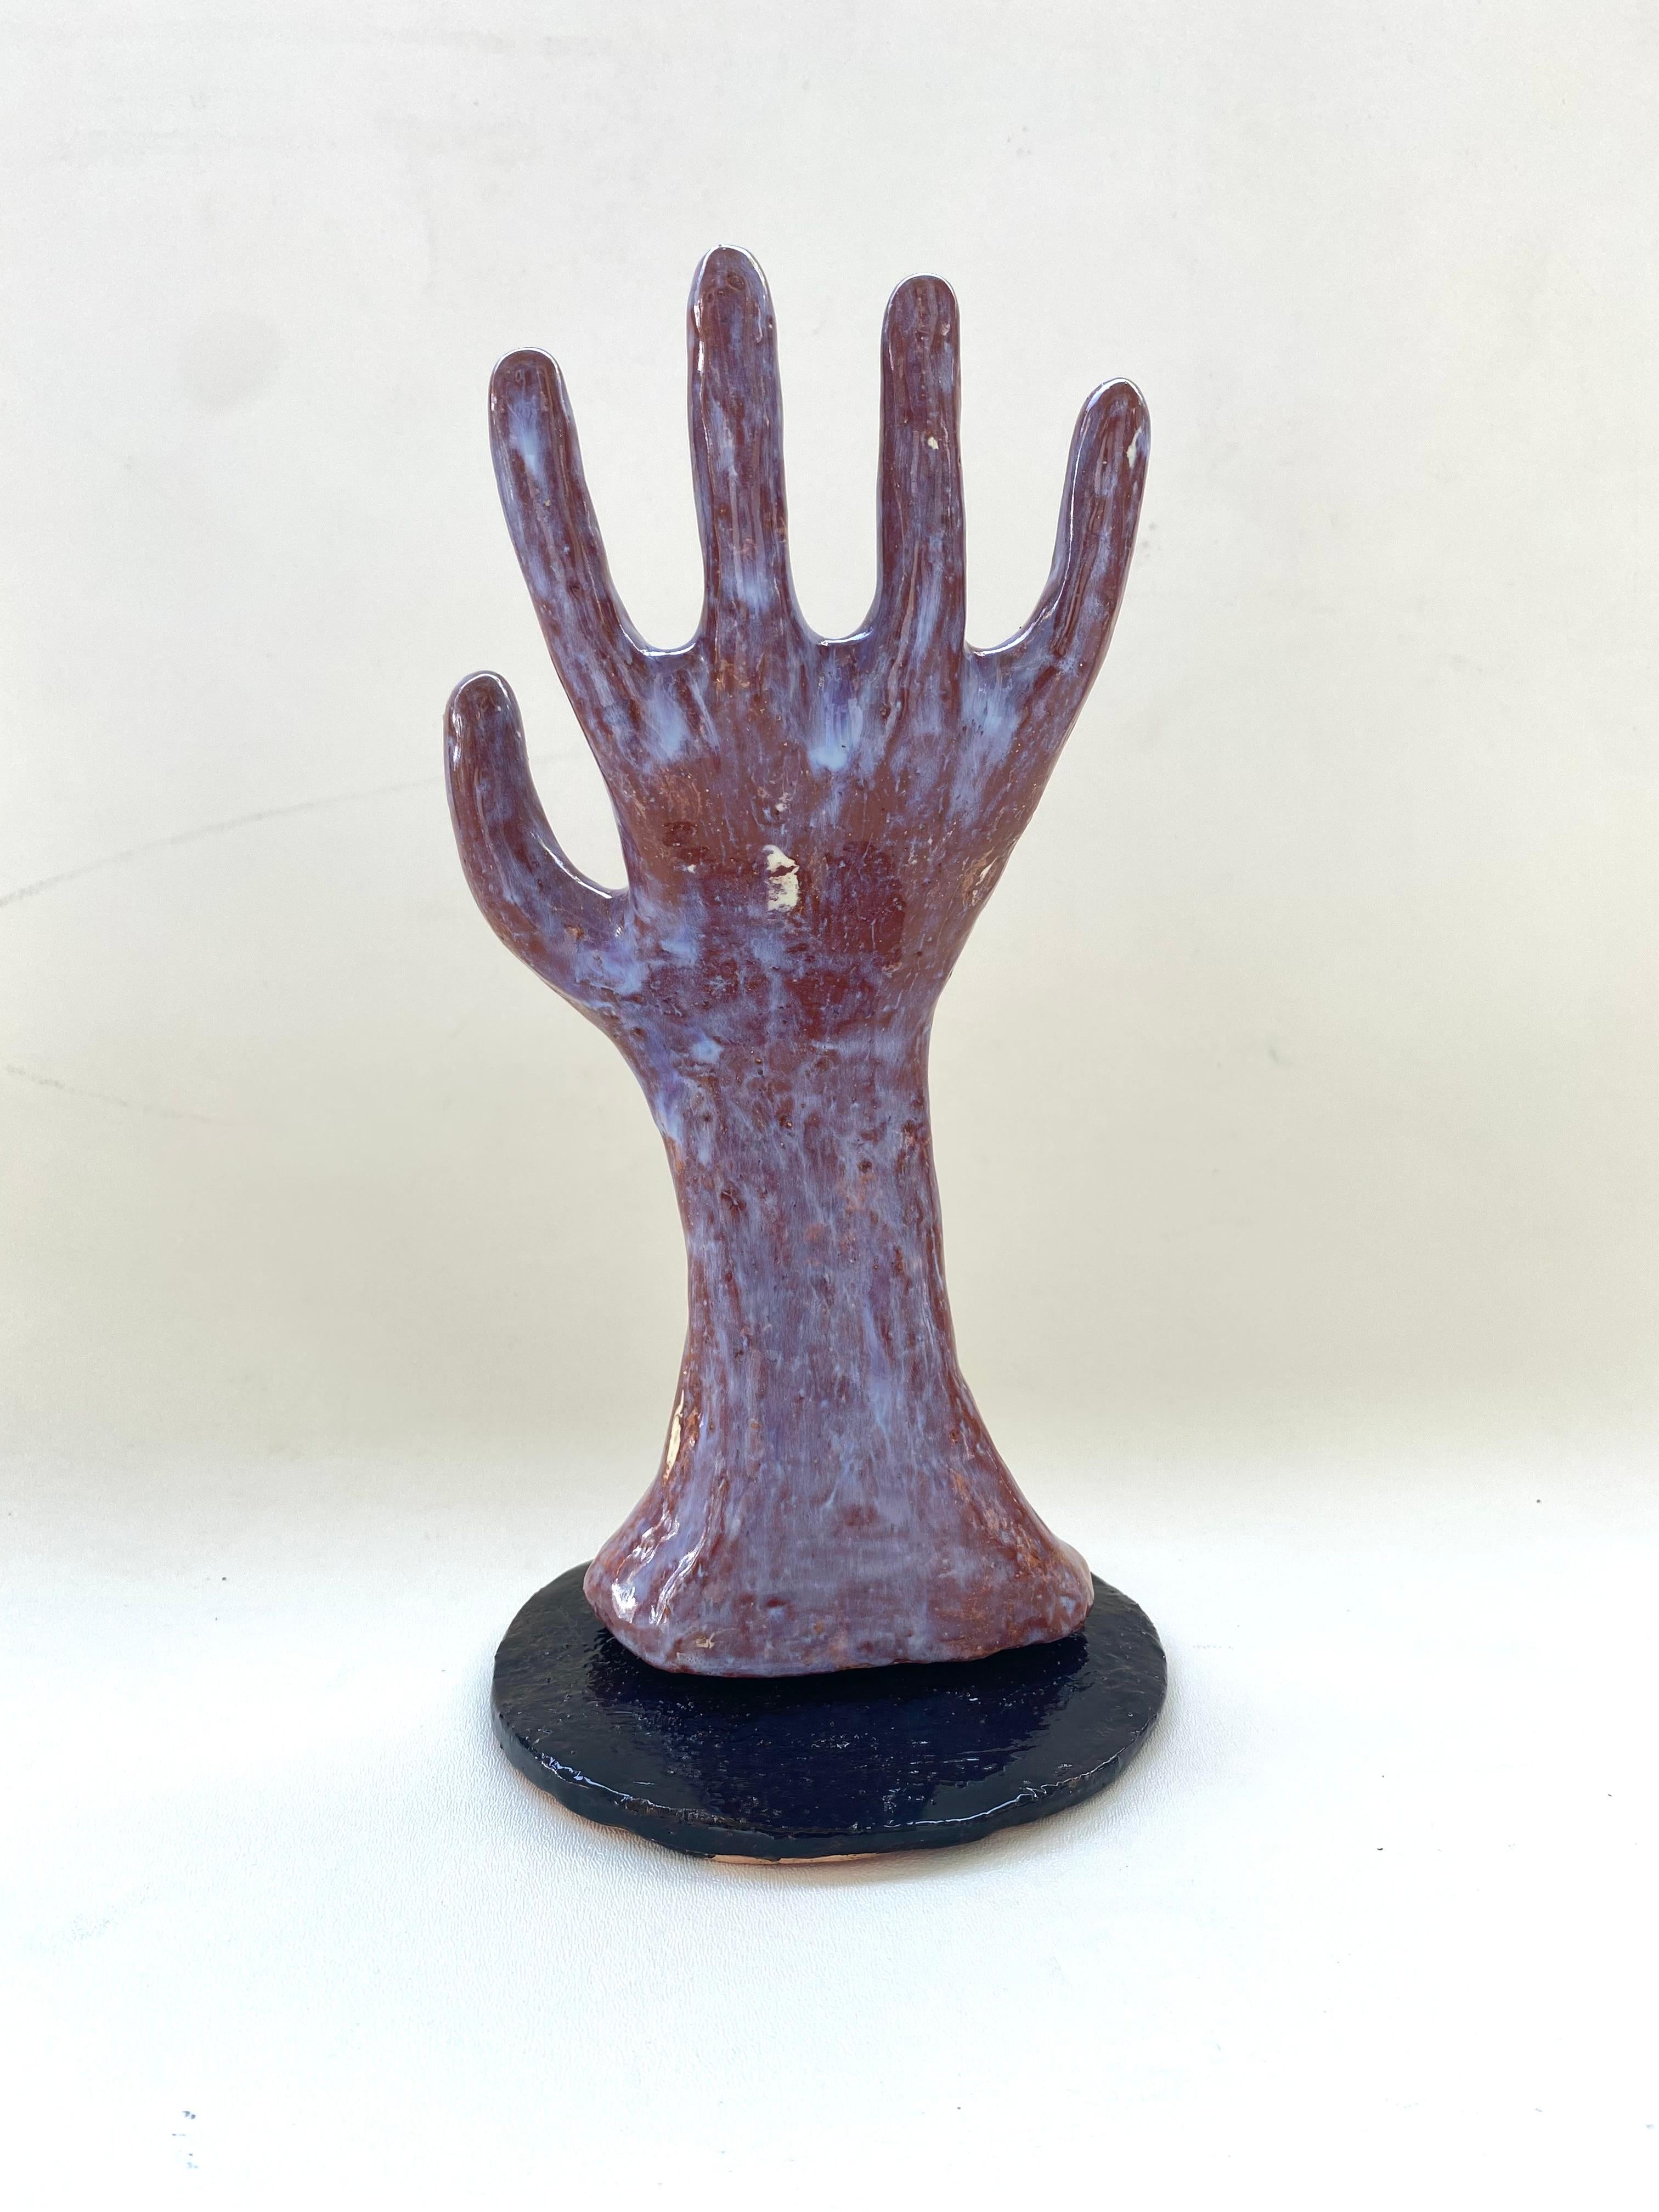 Hand gebaut skulpturale glasierte Keramik Hand Schmuck Display

Zum Verkauf angeboten wird eine handgefertigte funktionelle Kunst Keramik Hand, die signiert und datiert von Rexx Fischer ist. Die Hand ist sowohl ein funktionales als auch ein